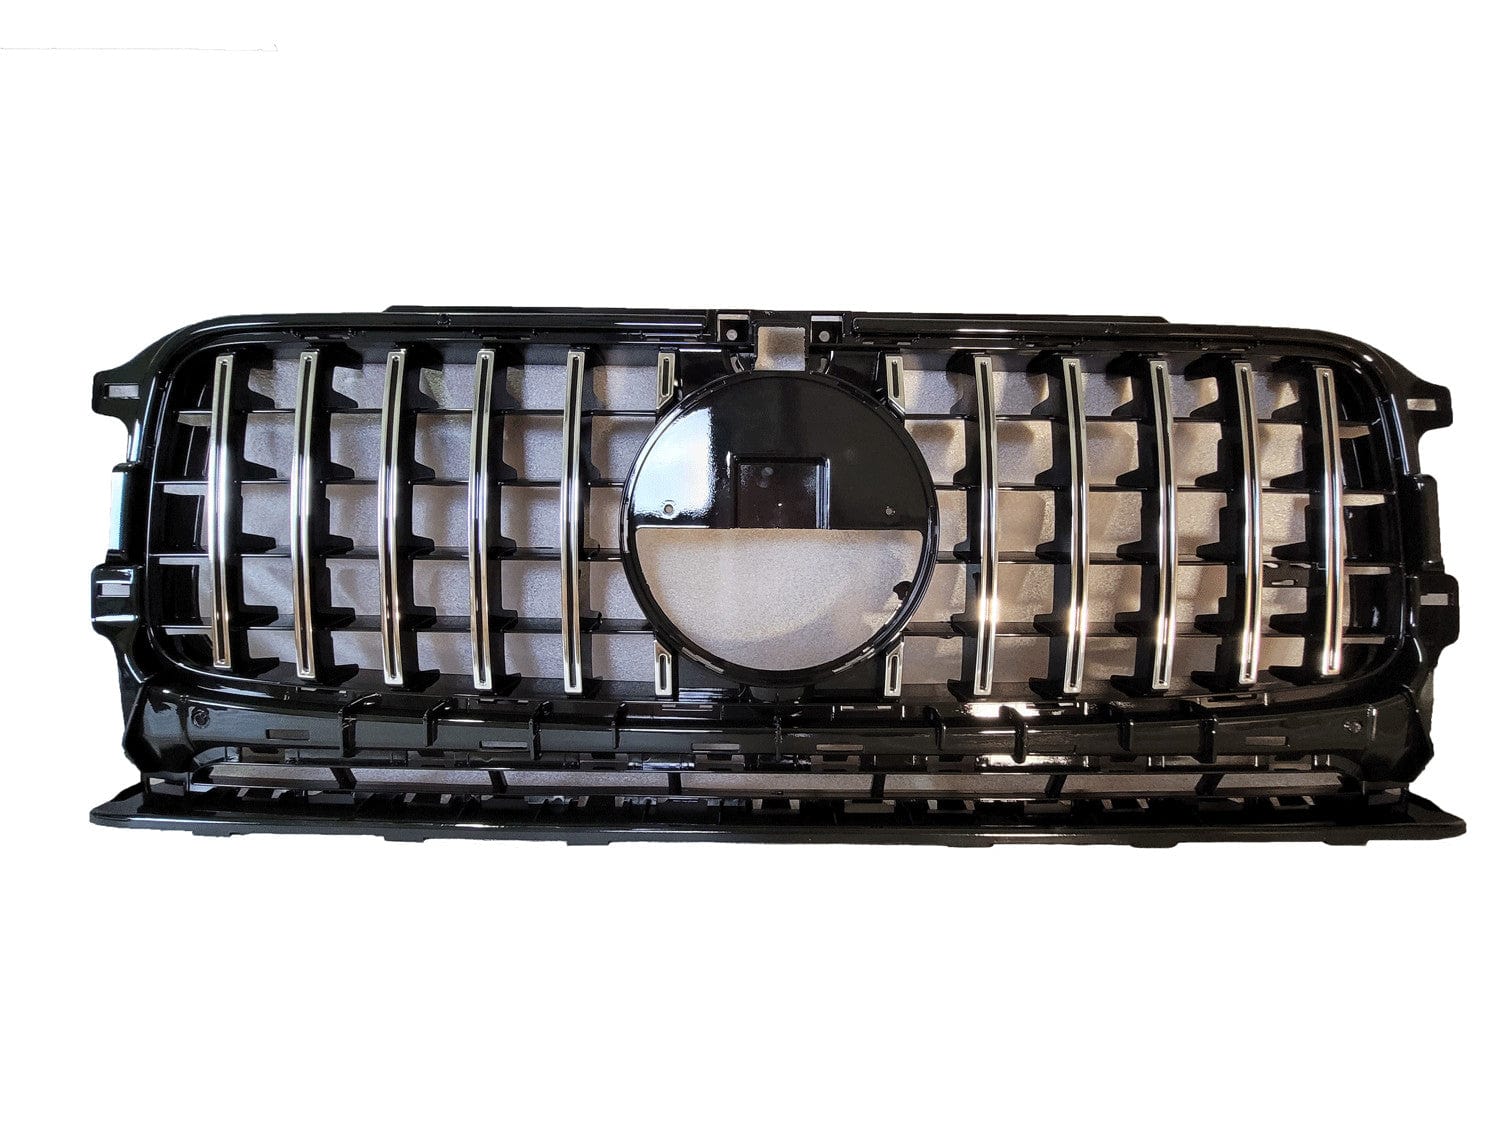 Grill compatibel met Mercedes G klasse W463 met koplampkappen glanzend zwart chrome - Tuningonline